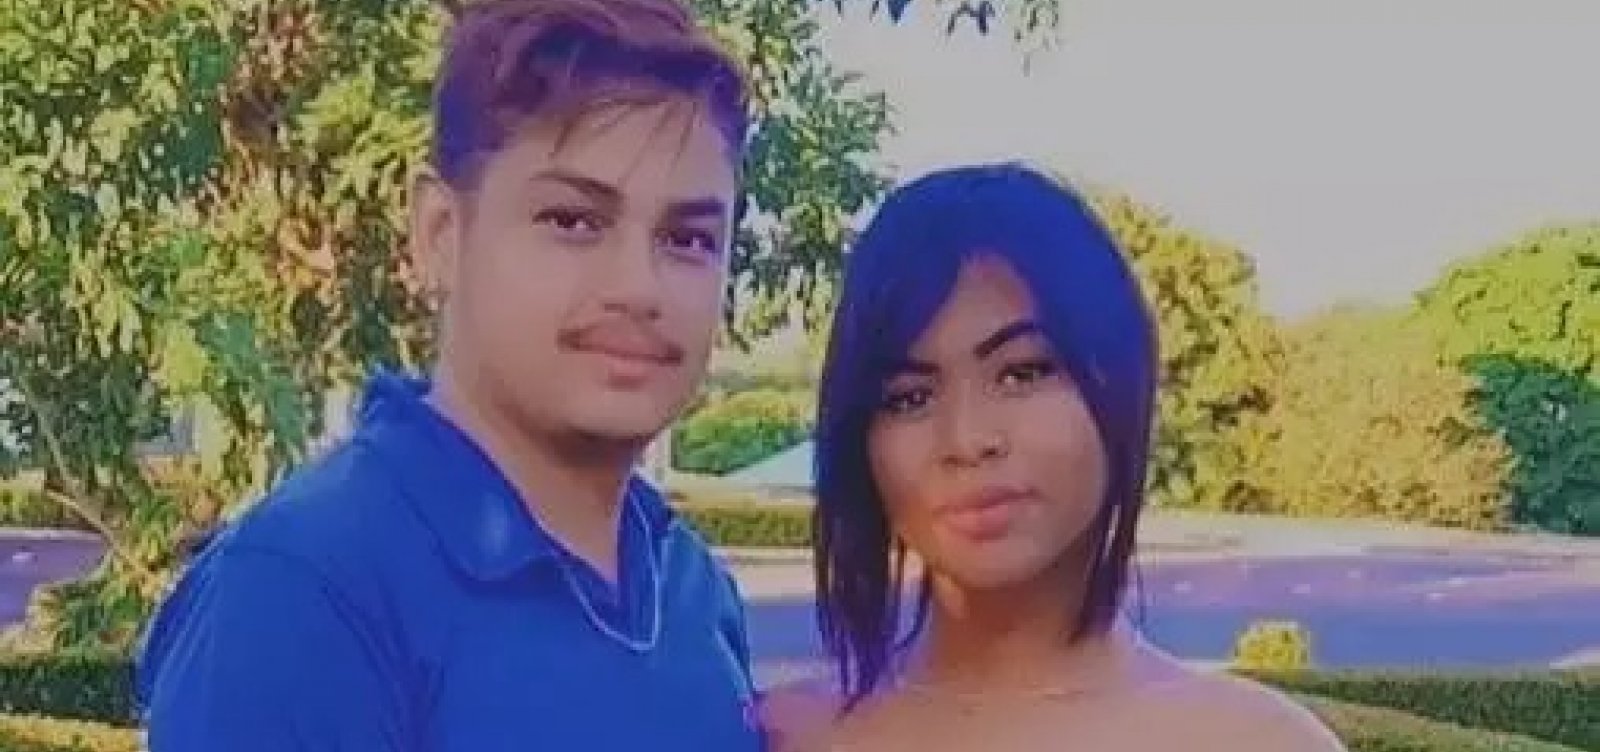 #MetaAColher: Homem é preso por suspeita de feminicídio após matar mulher trans no Pará